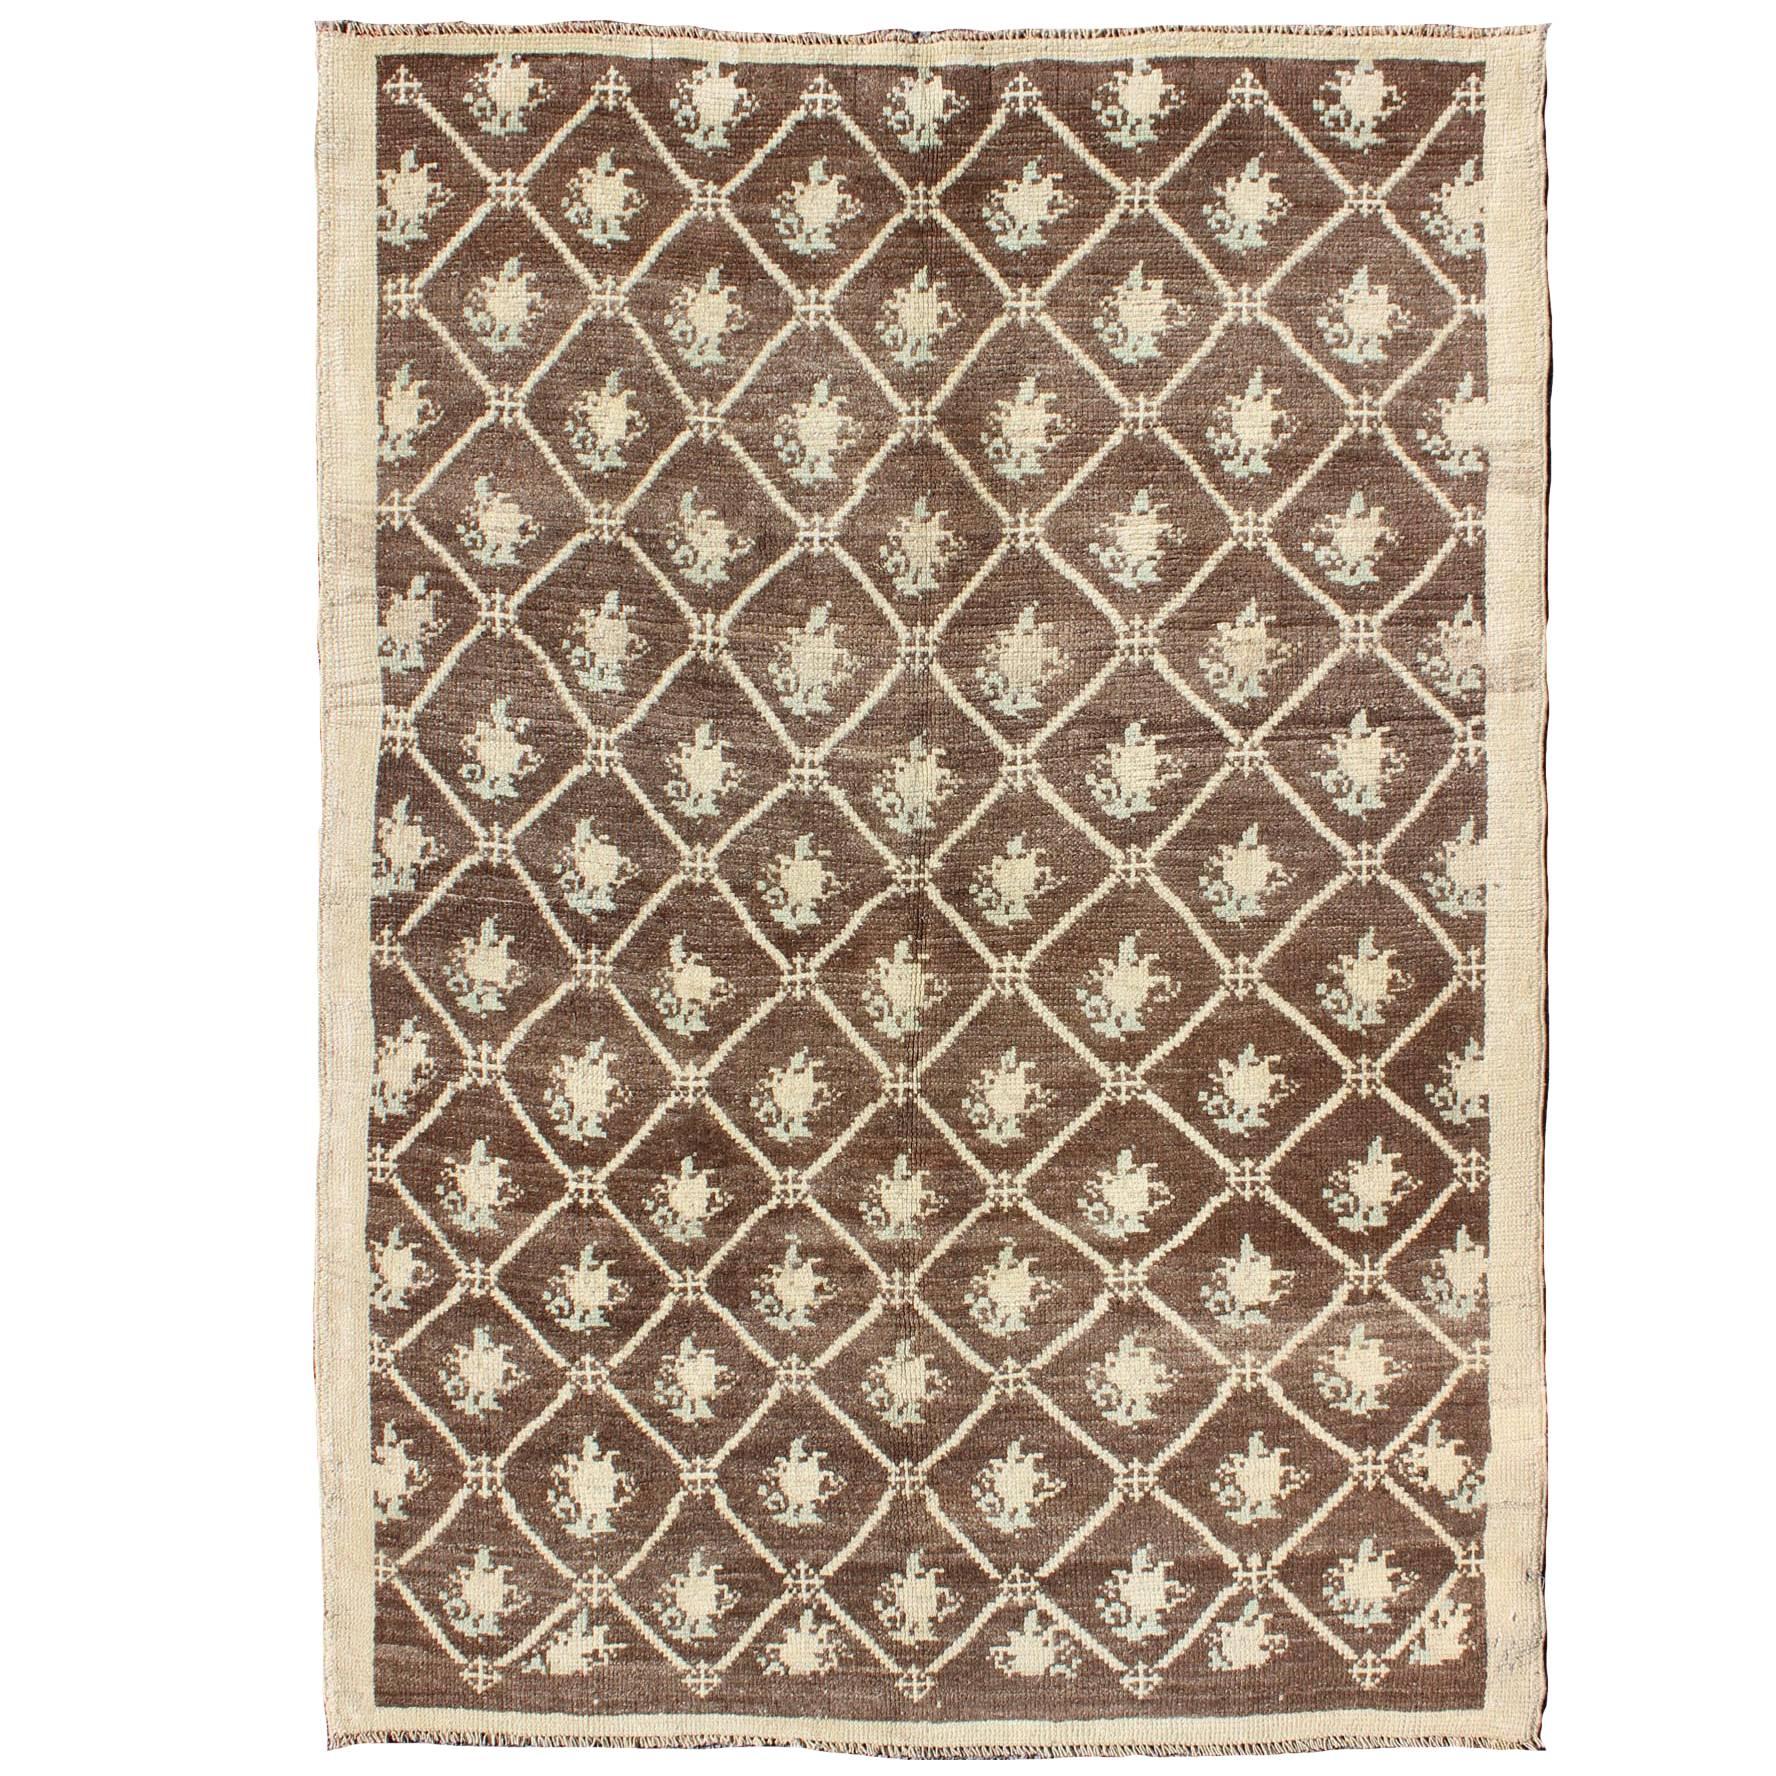 Türkischer Tulu-Teppich im All-Over-Design in Braun- und Cremetönen